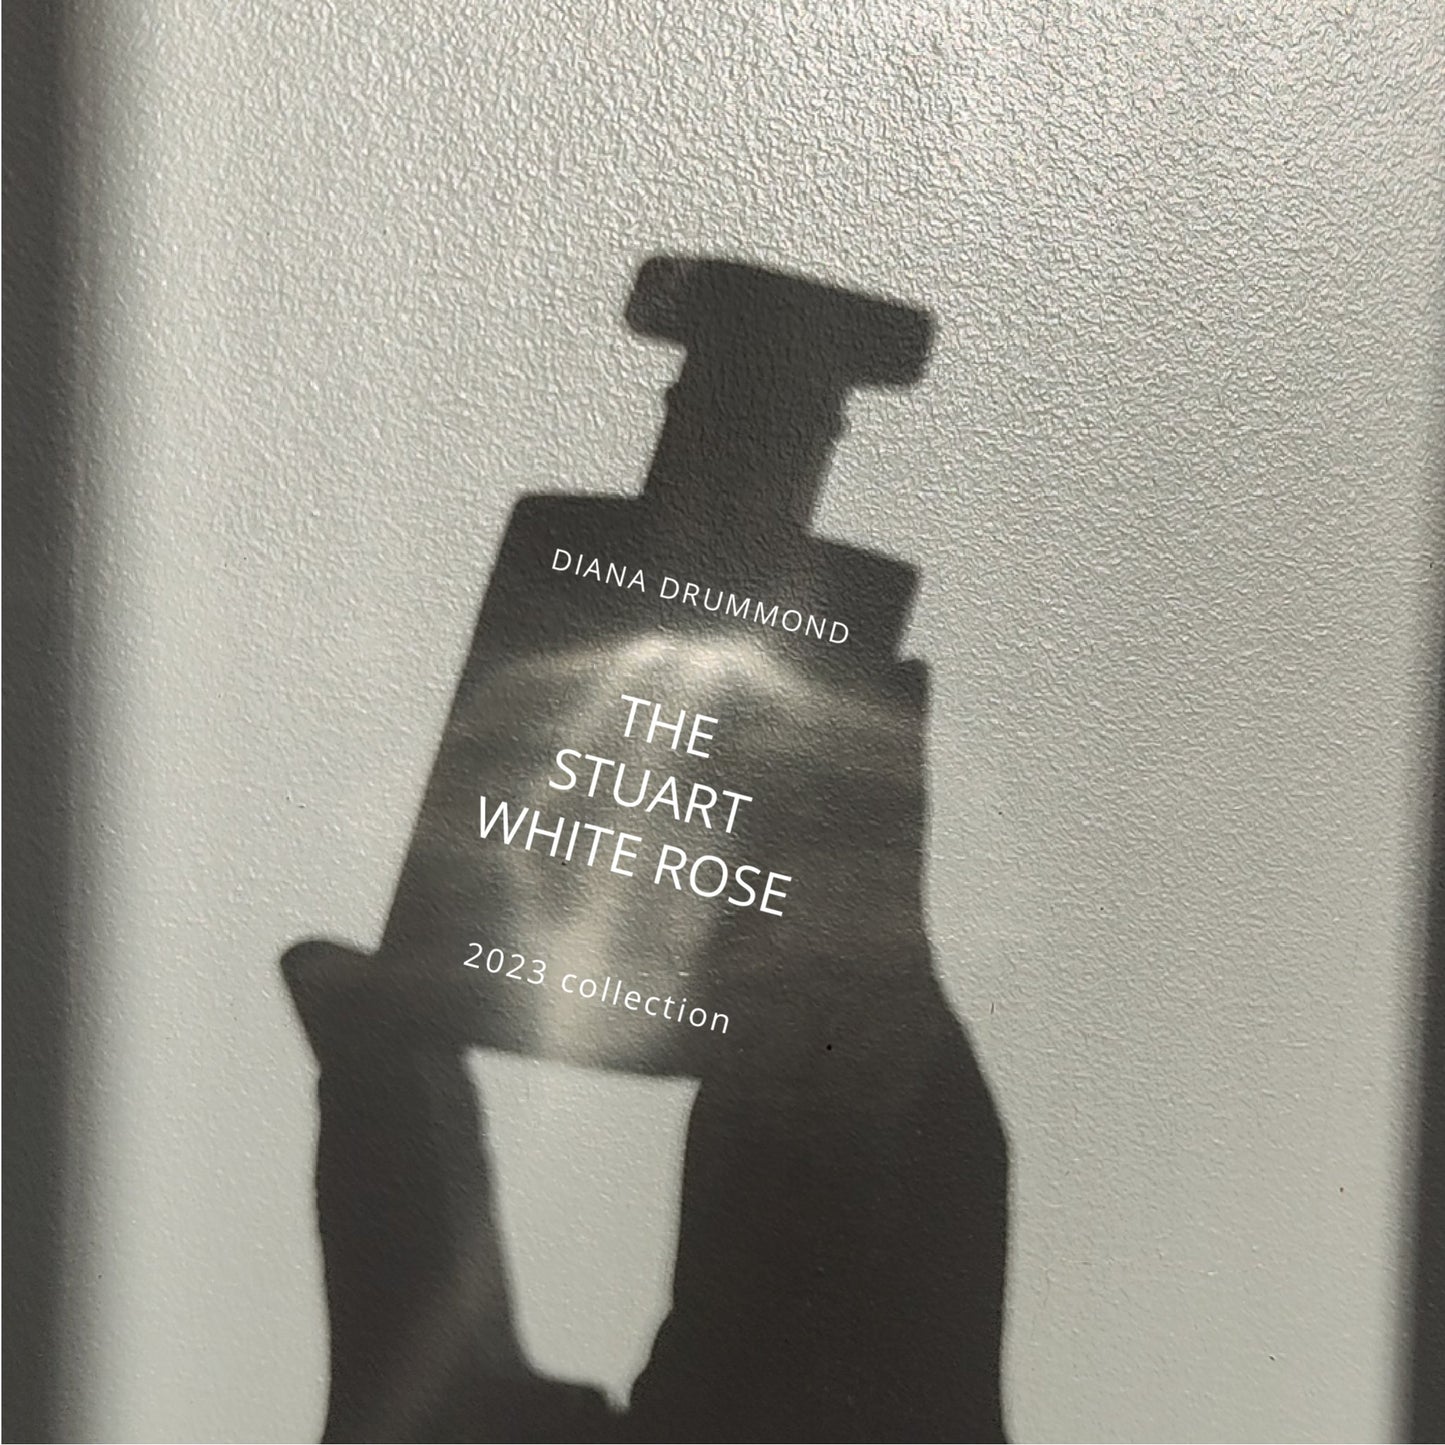 THE STUART WHITE ROSE 2023 - Diana DrummondTHE STUART WHITE ROSE 2023PerfumeDIANA DRUMMONDDiana Drummond